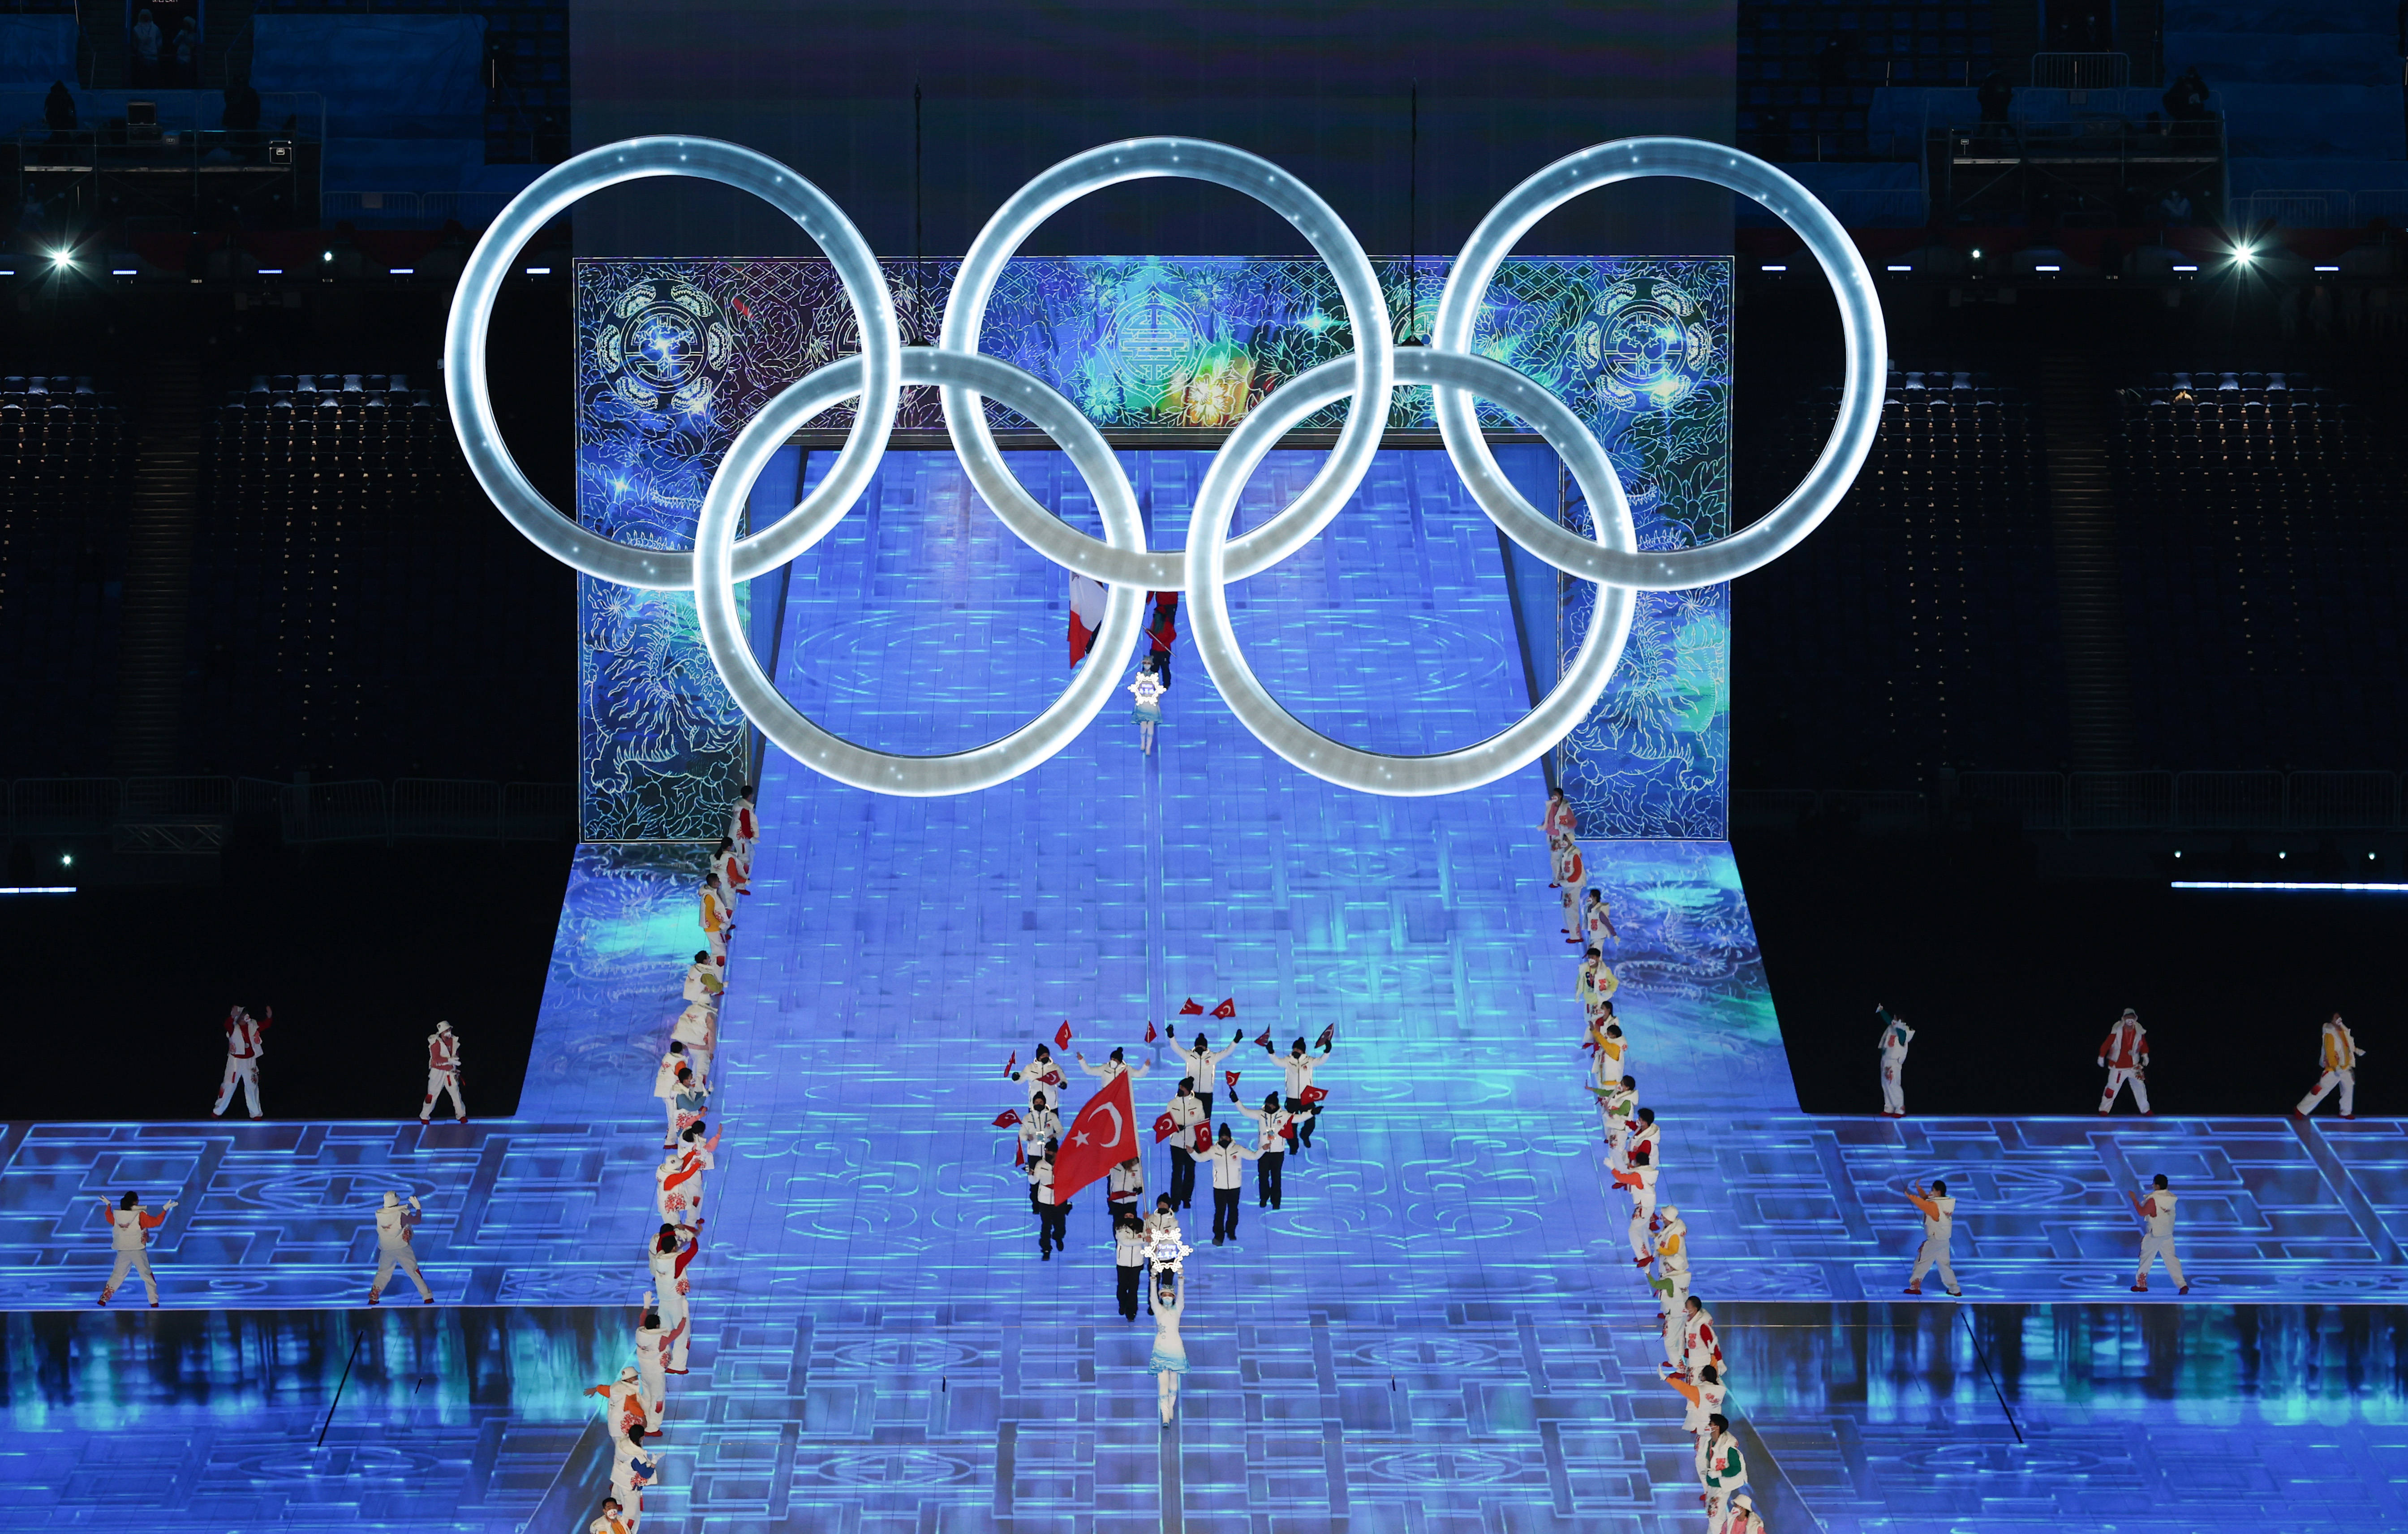 冬奥会开幕式照片高清图片